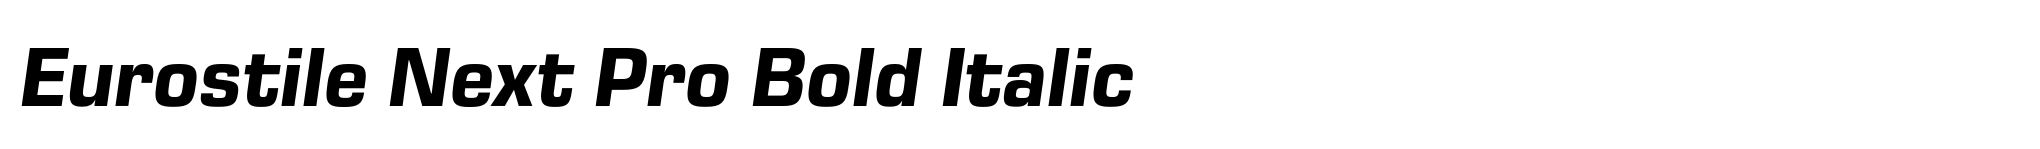 Eurostile Next Pro Bold Italic image